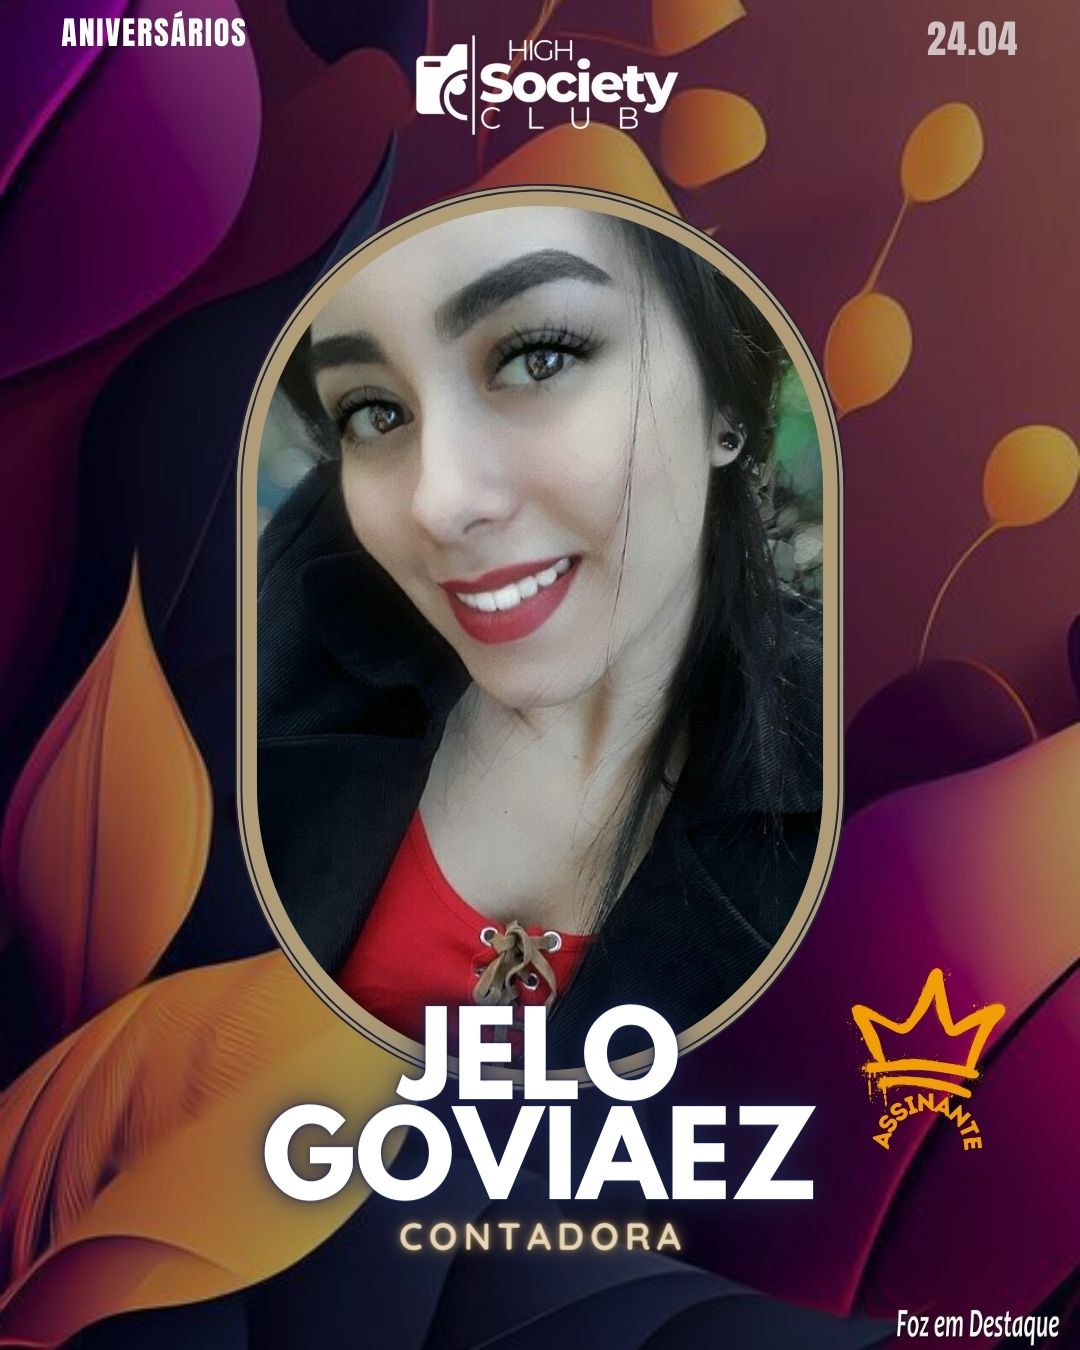 Jelo Goviaez - Contadora
 High Society Club Foz em Destaque